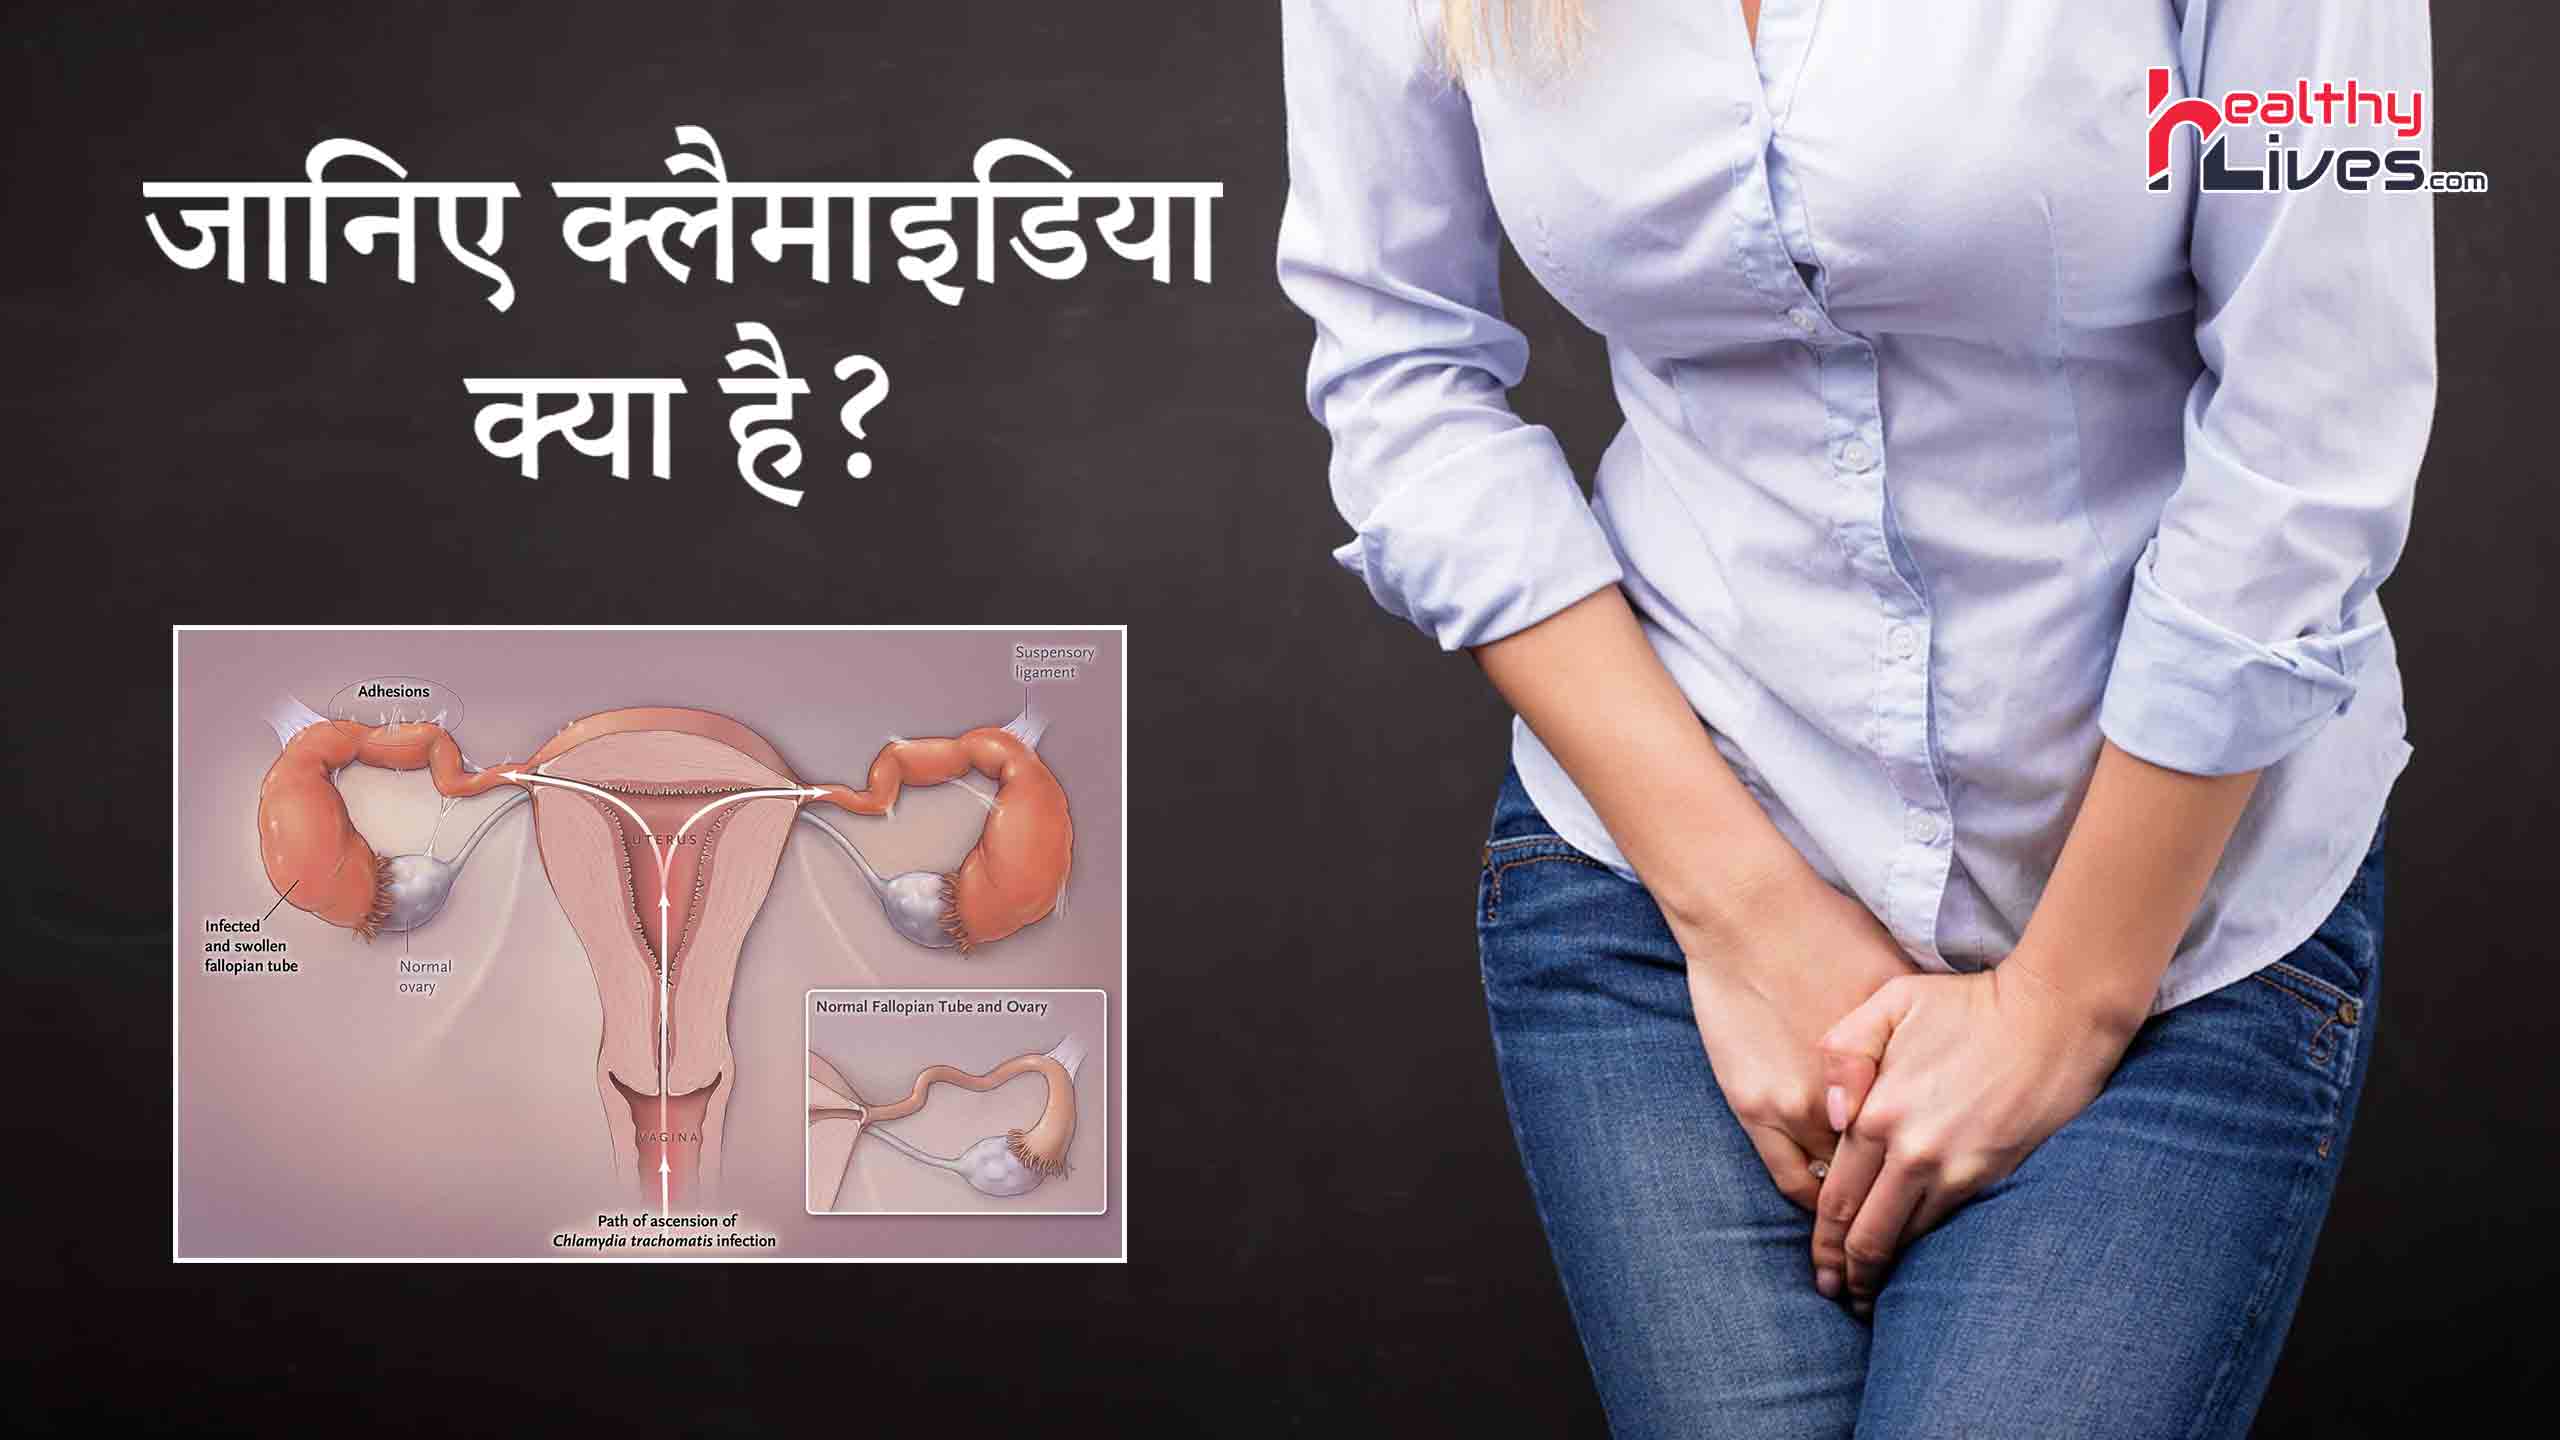 Chlamydia in Hindi: सेक्सुअल ट्रांसमिटेड इंफेक्शन क्लैमाइडिया होने के कारण, लक्षण और बचाव